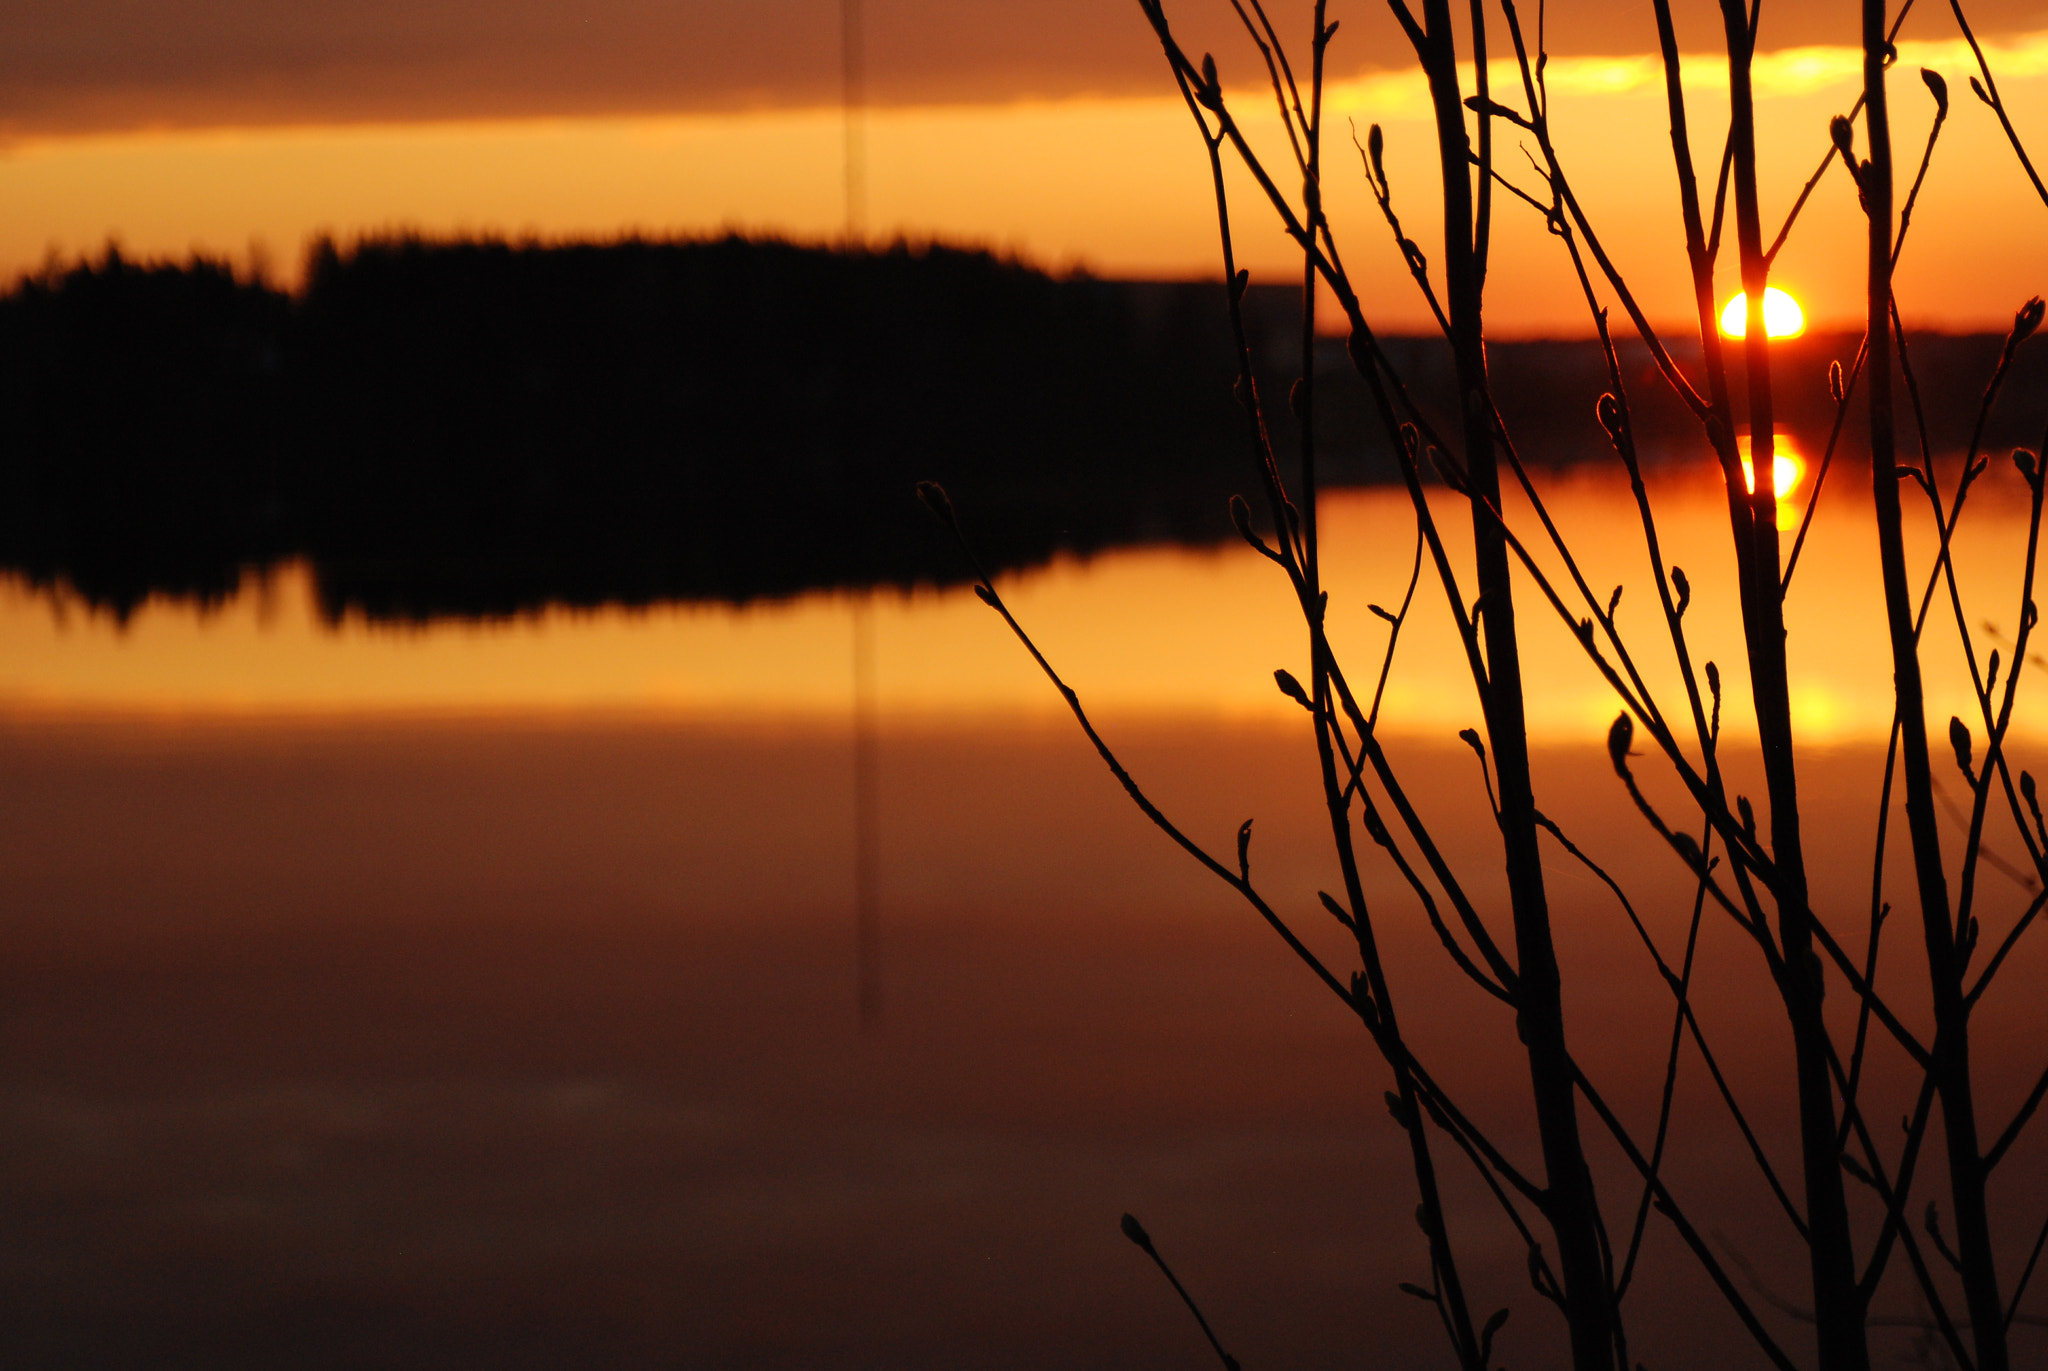 Nikon D80 + AF Zoom-Nikkor 28-105mm f/3.5-4.5D IF sample photo. Lake porovesi sunset photography